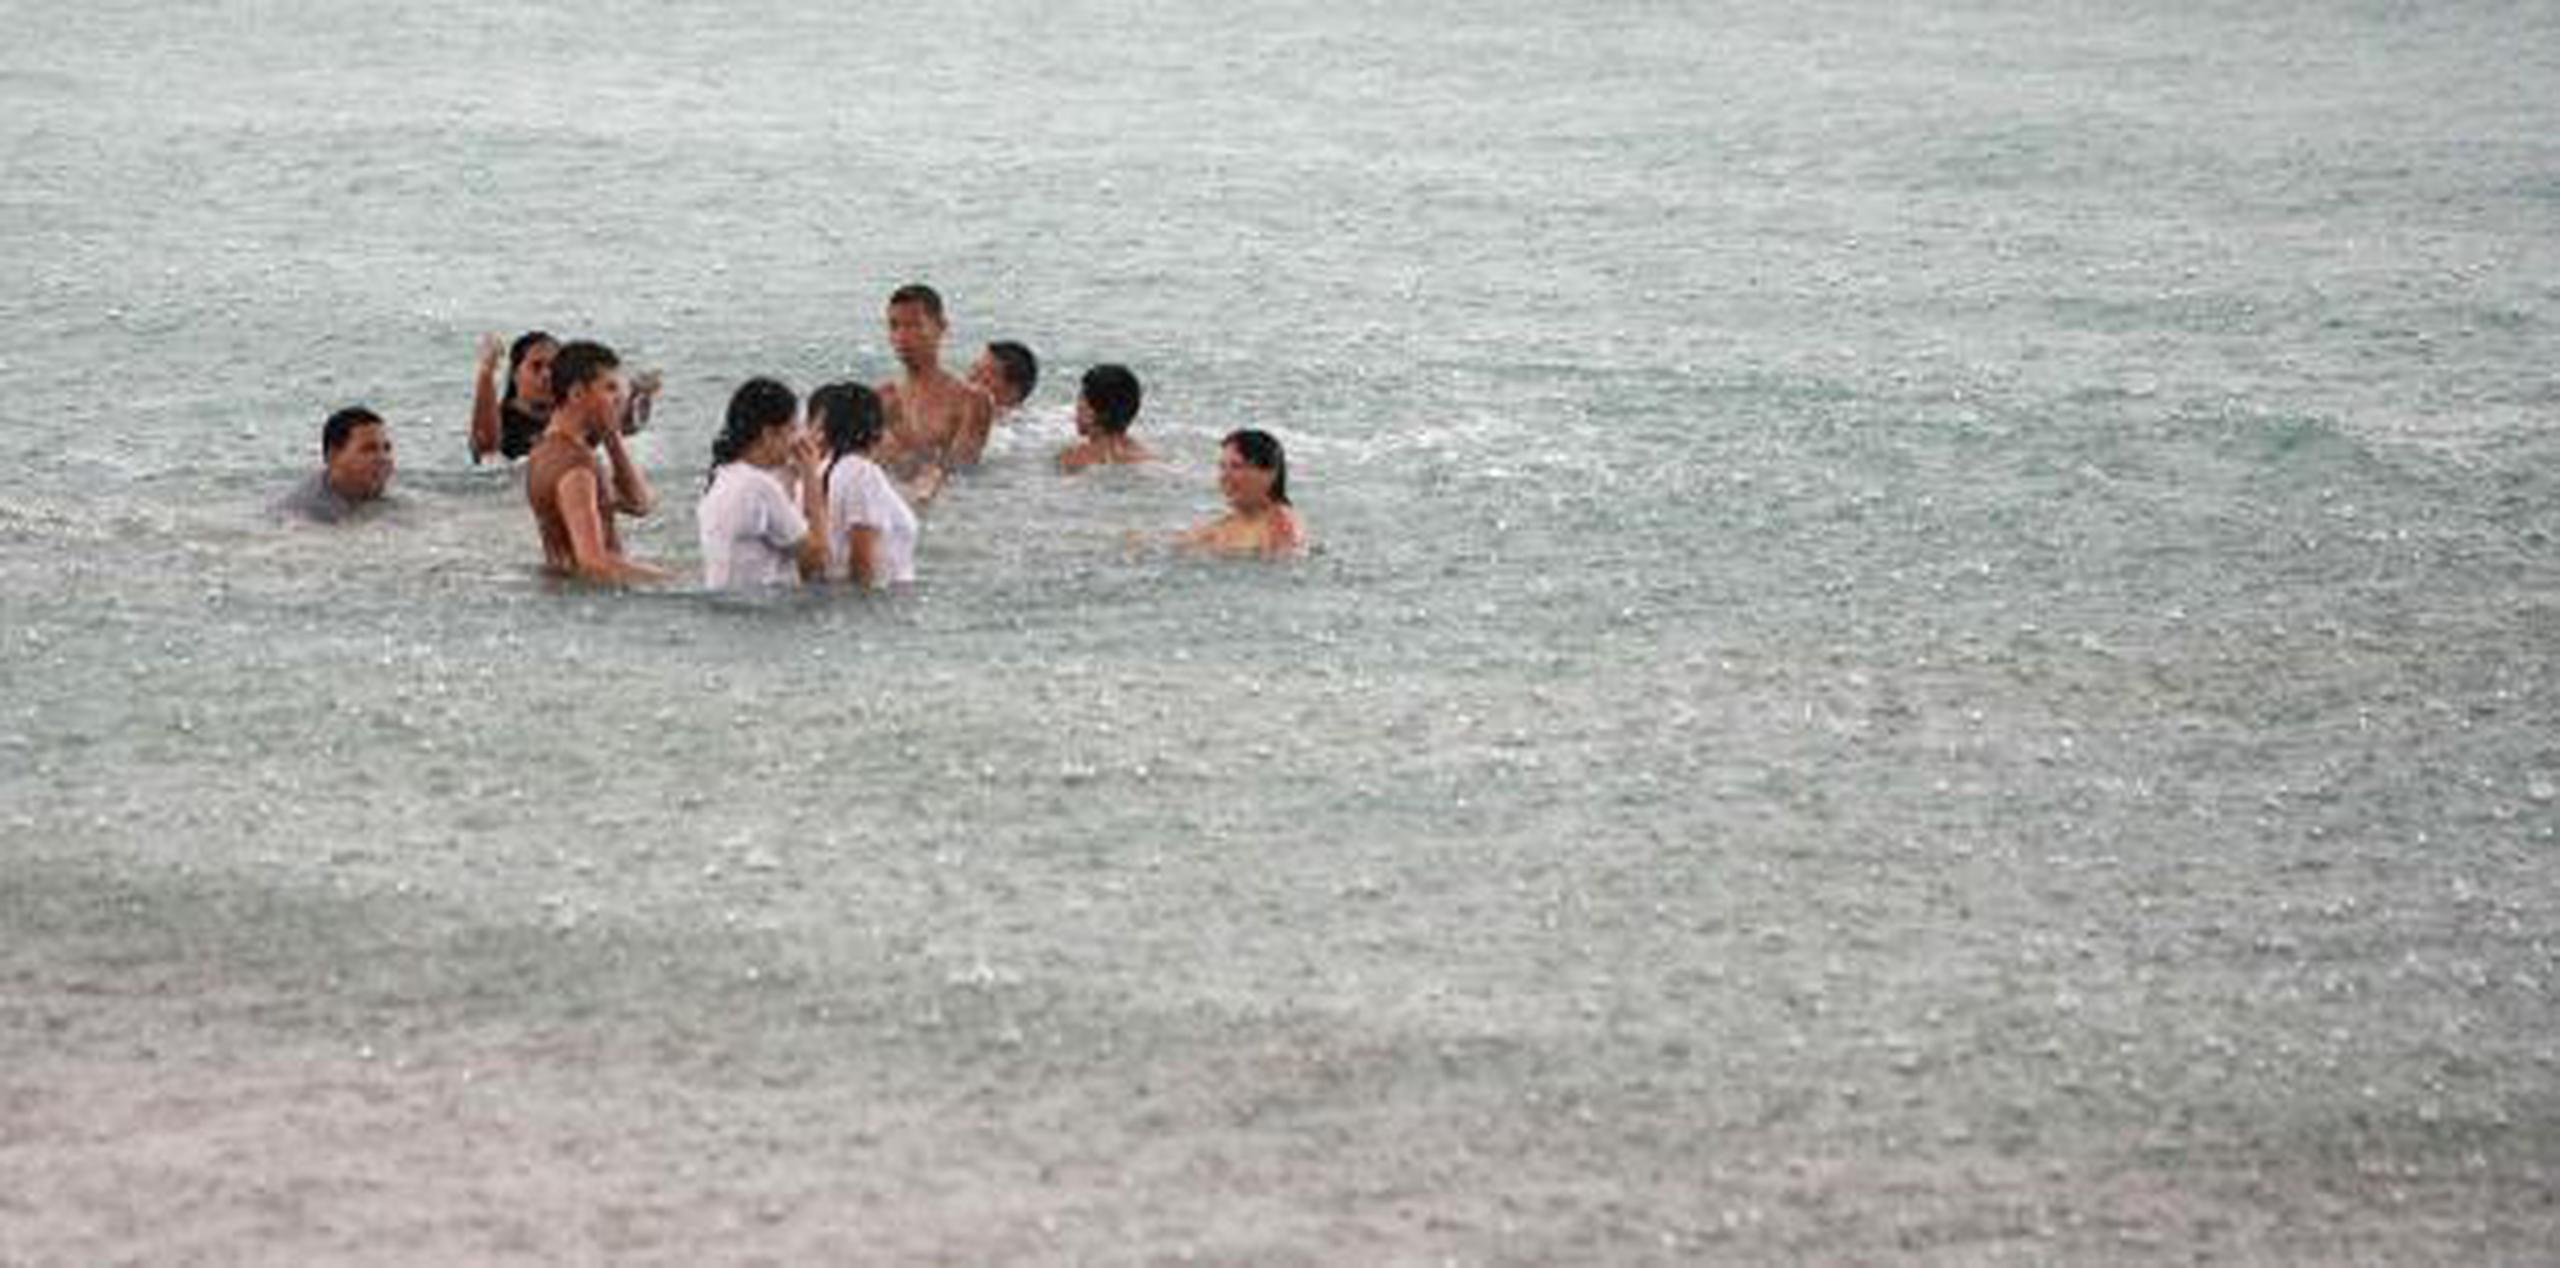 Un grupo de personas permanece en el mar a pesar de la lluvia. (Archivo)